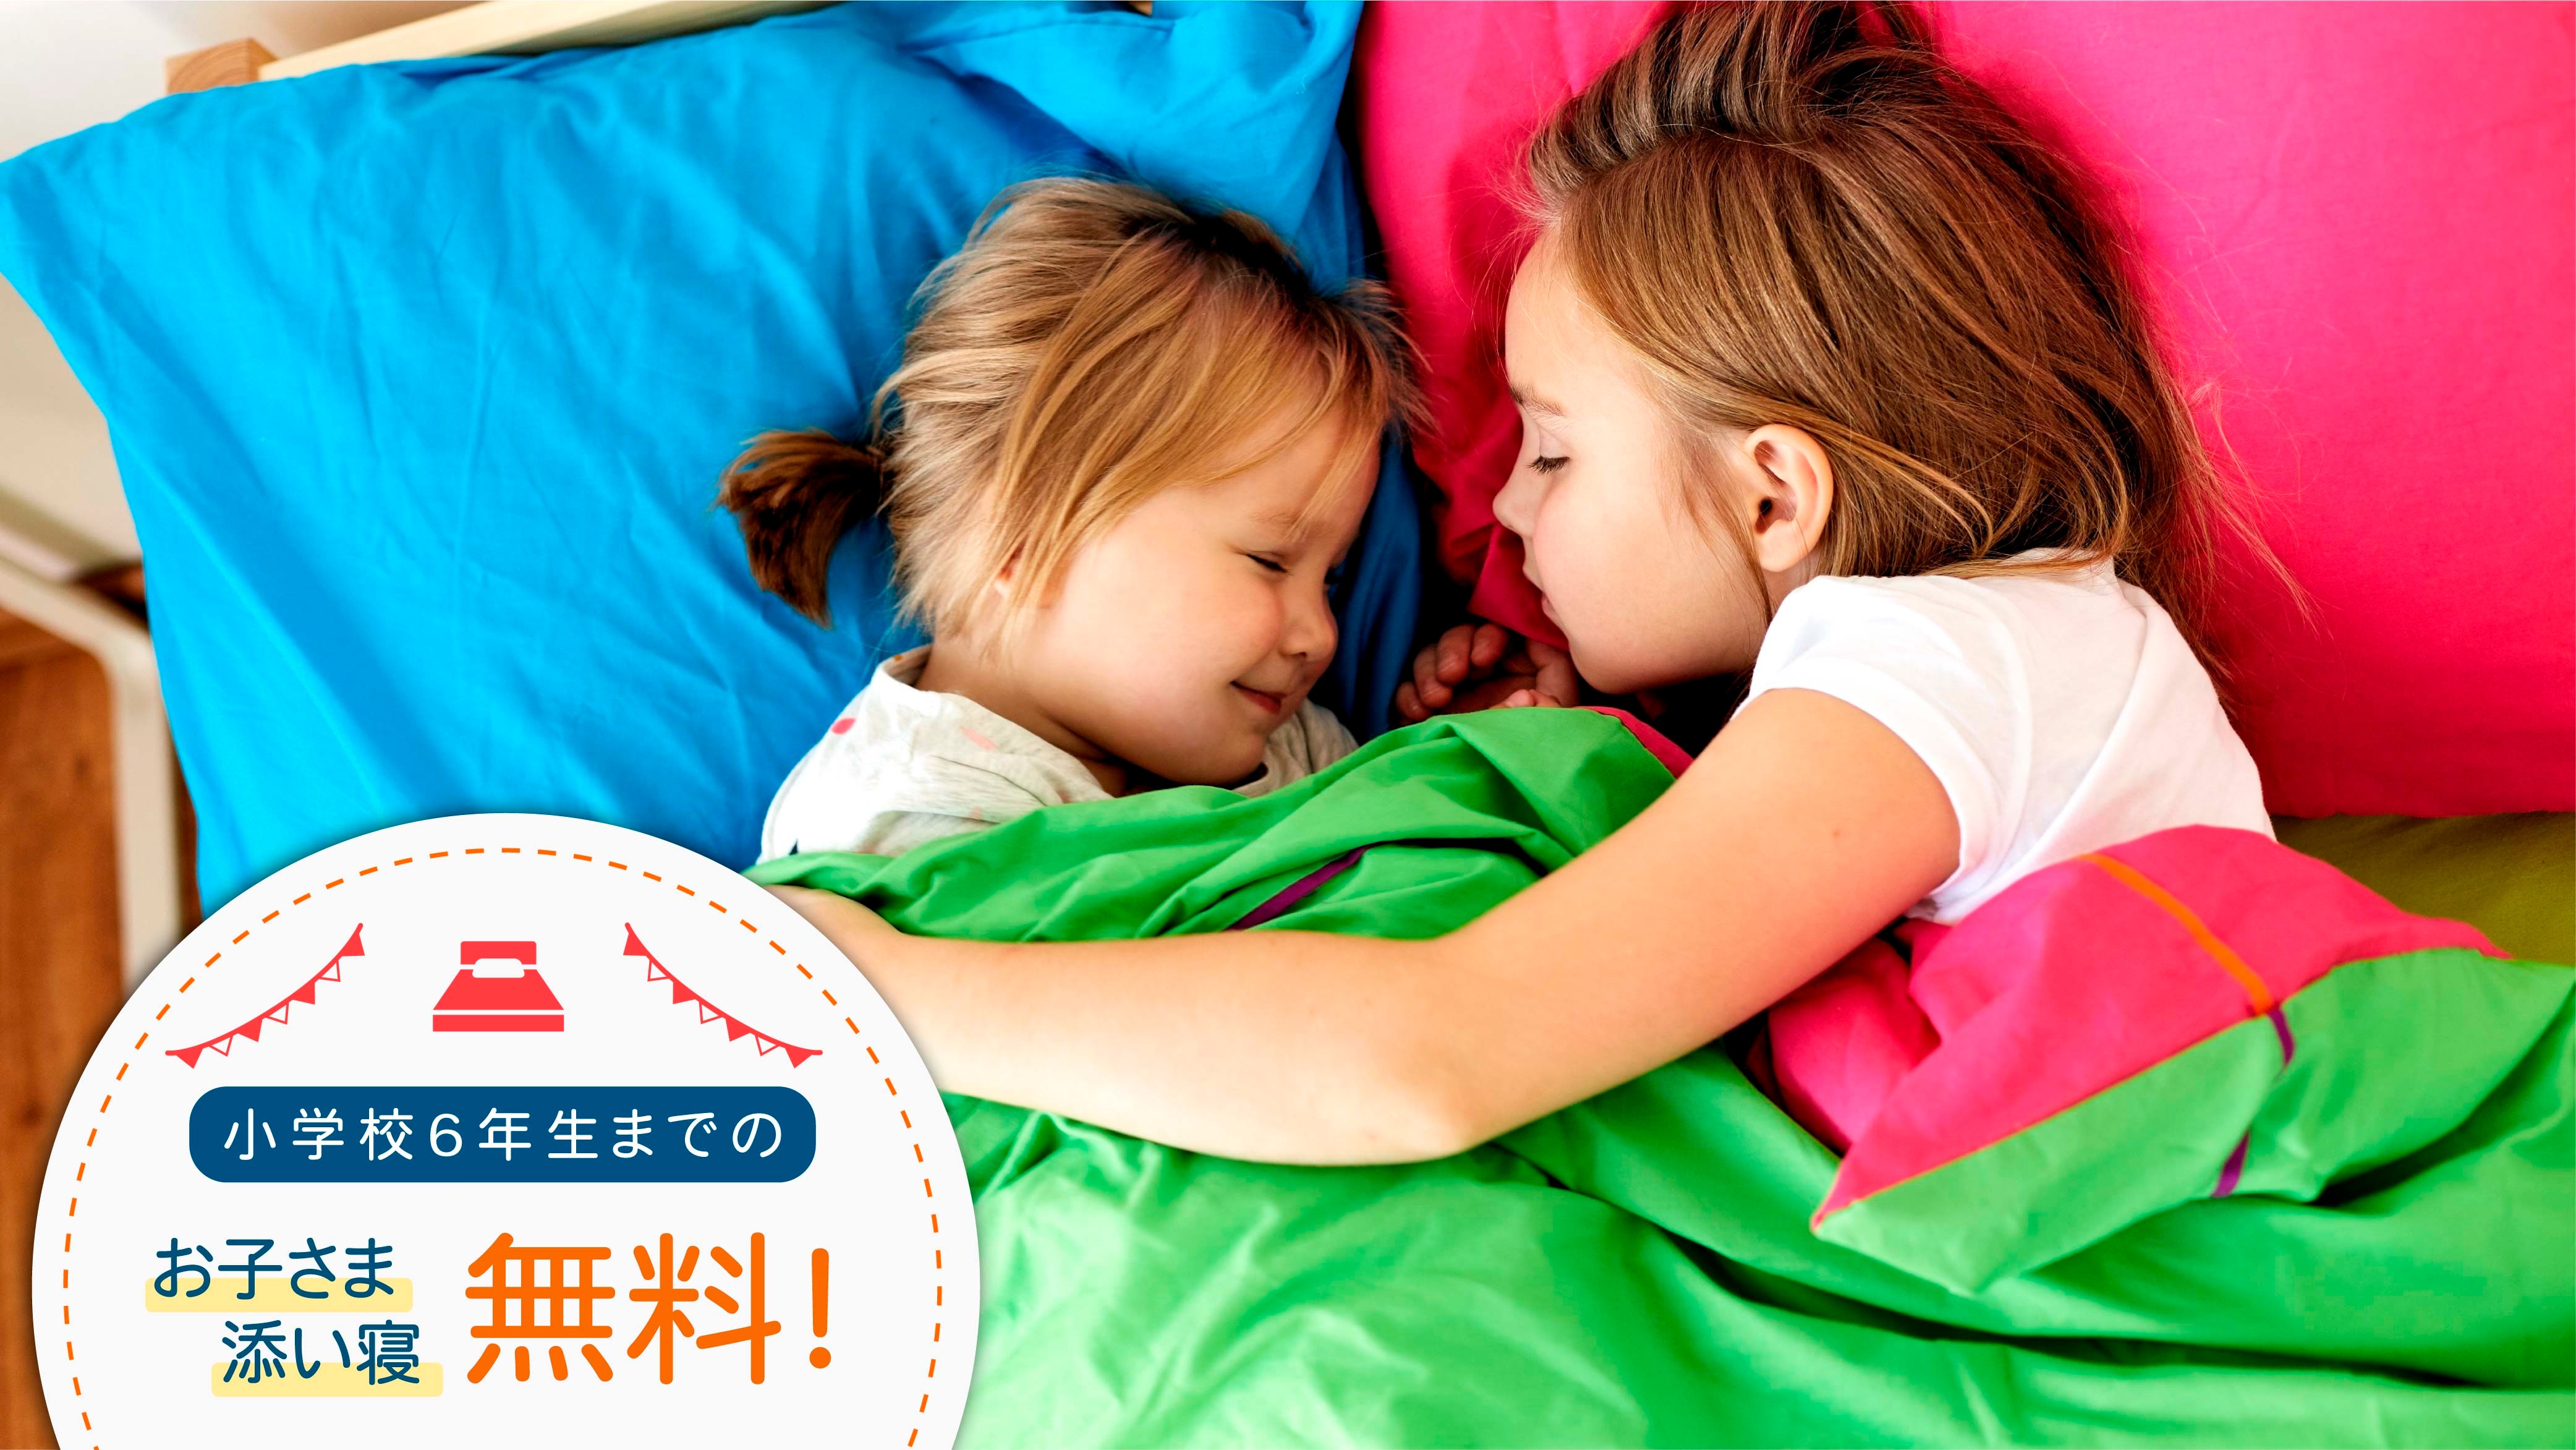 [Berbagi tempat tidur gratis untuk anak-anak] Berbagi tempat tidur untuk anak-anak hingga kelas 6 tidak dikenai biaya.